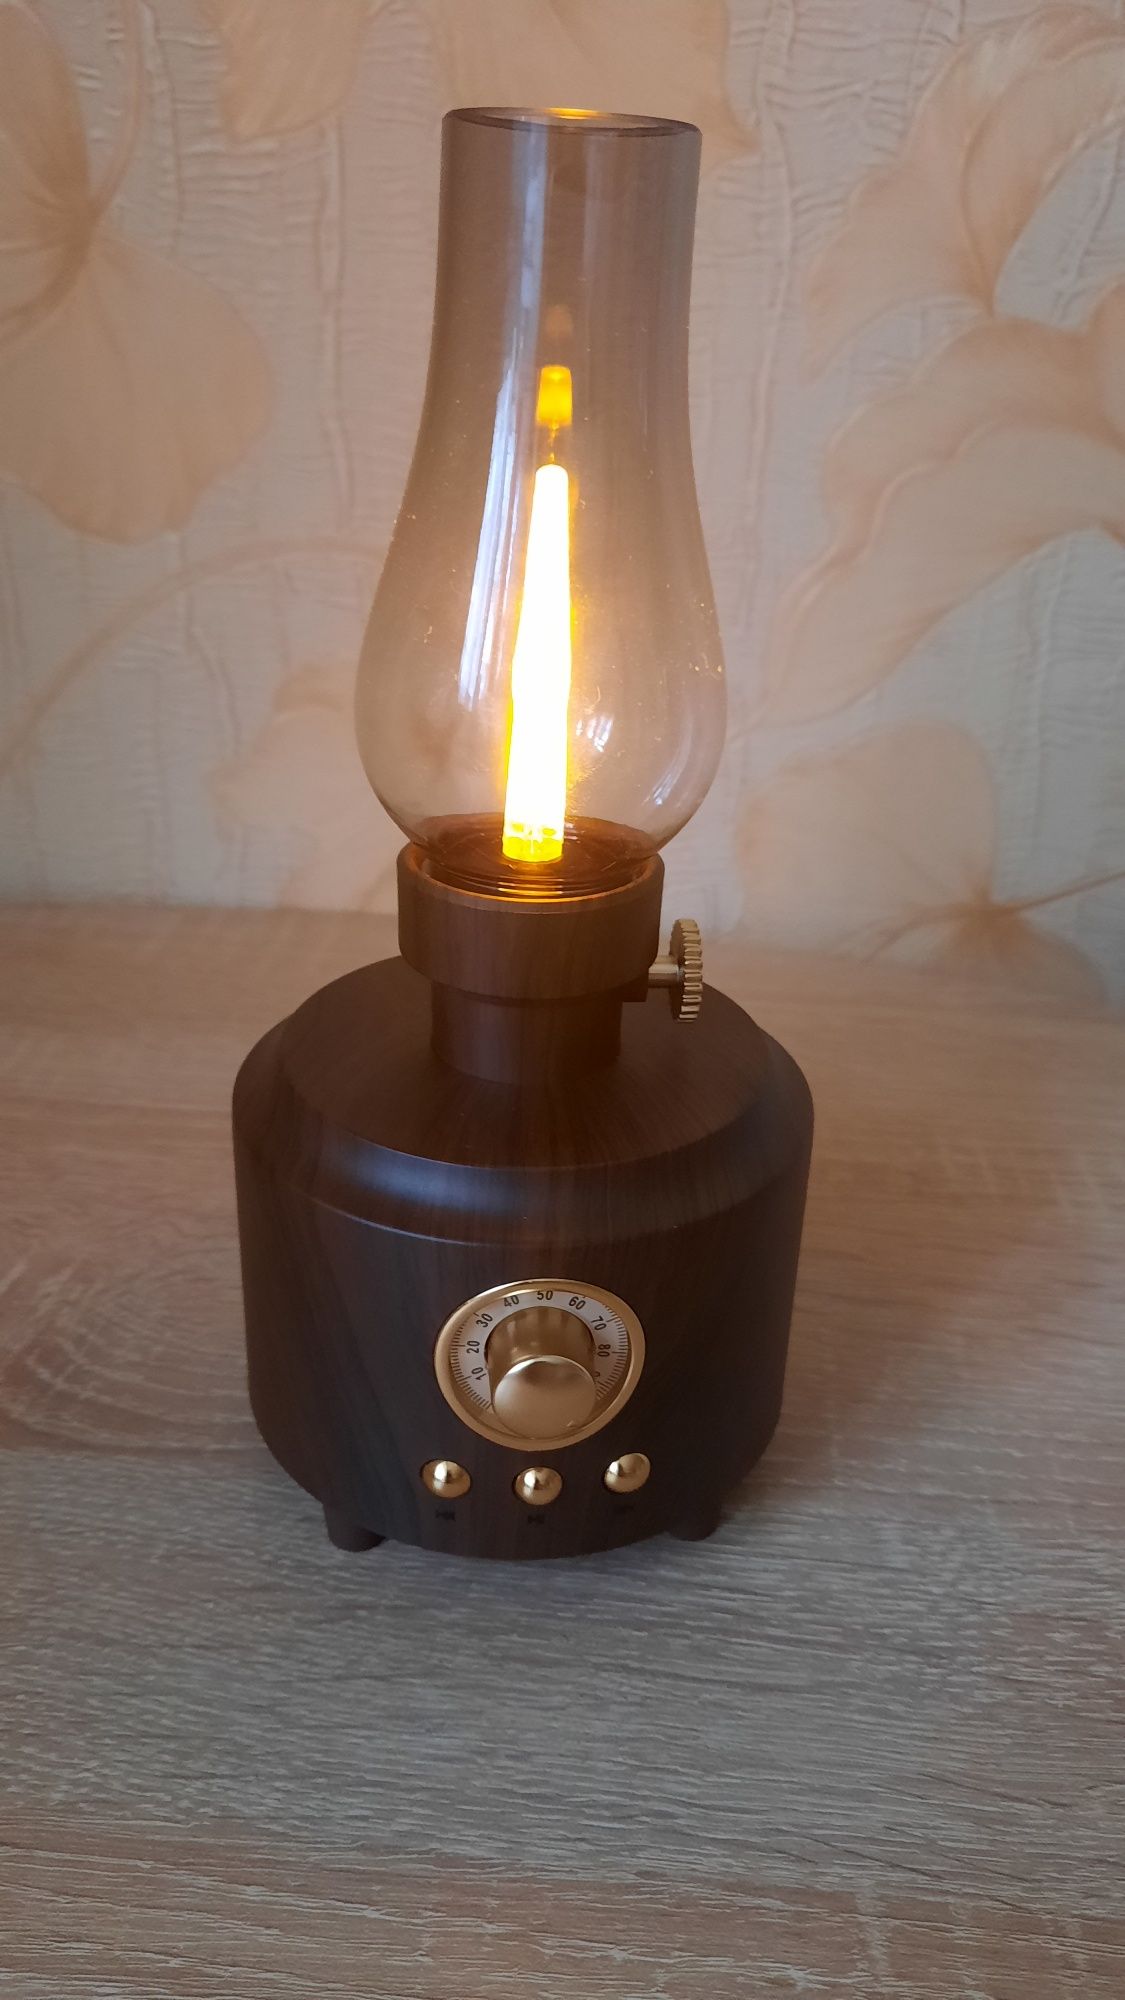 Украшение для дома Bluetooth-колонка в виде лампы.